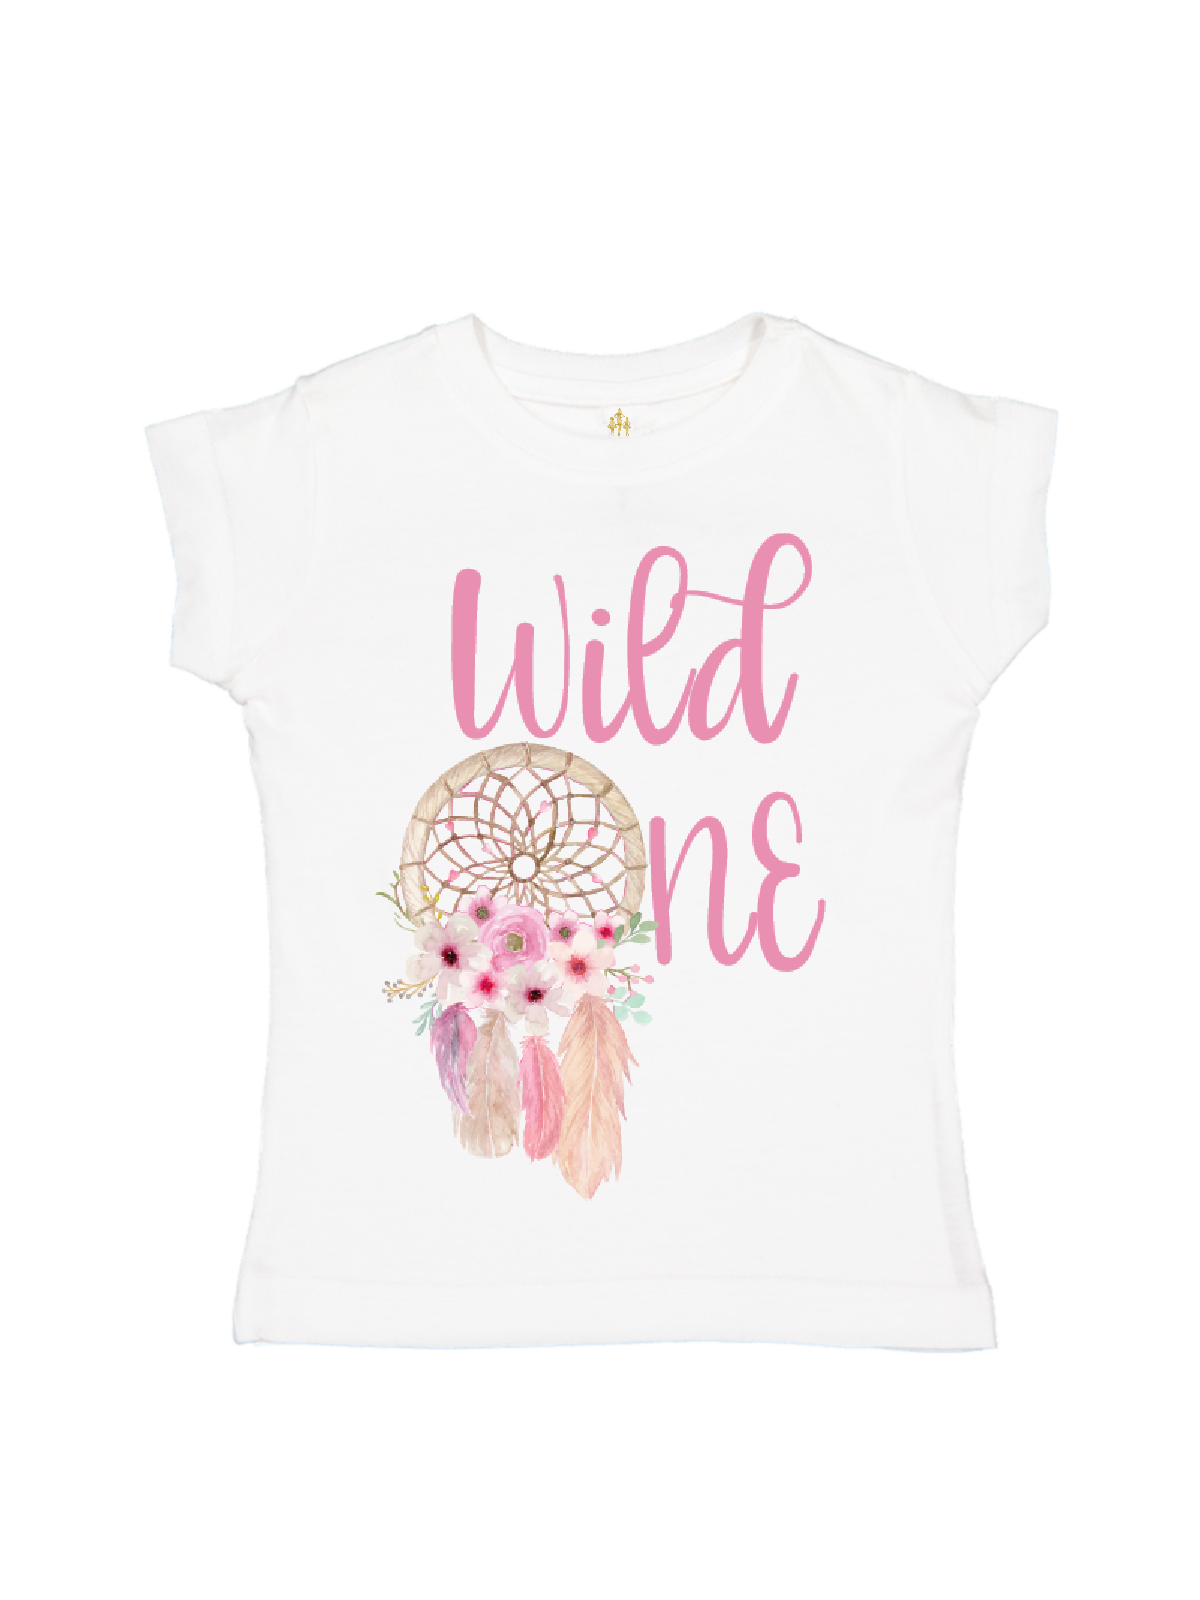 wild one girls dreamcatcher pink shirt